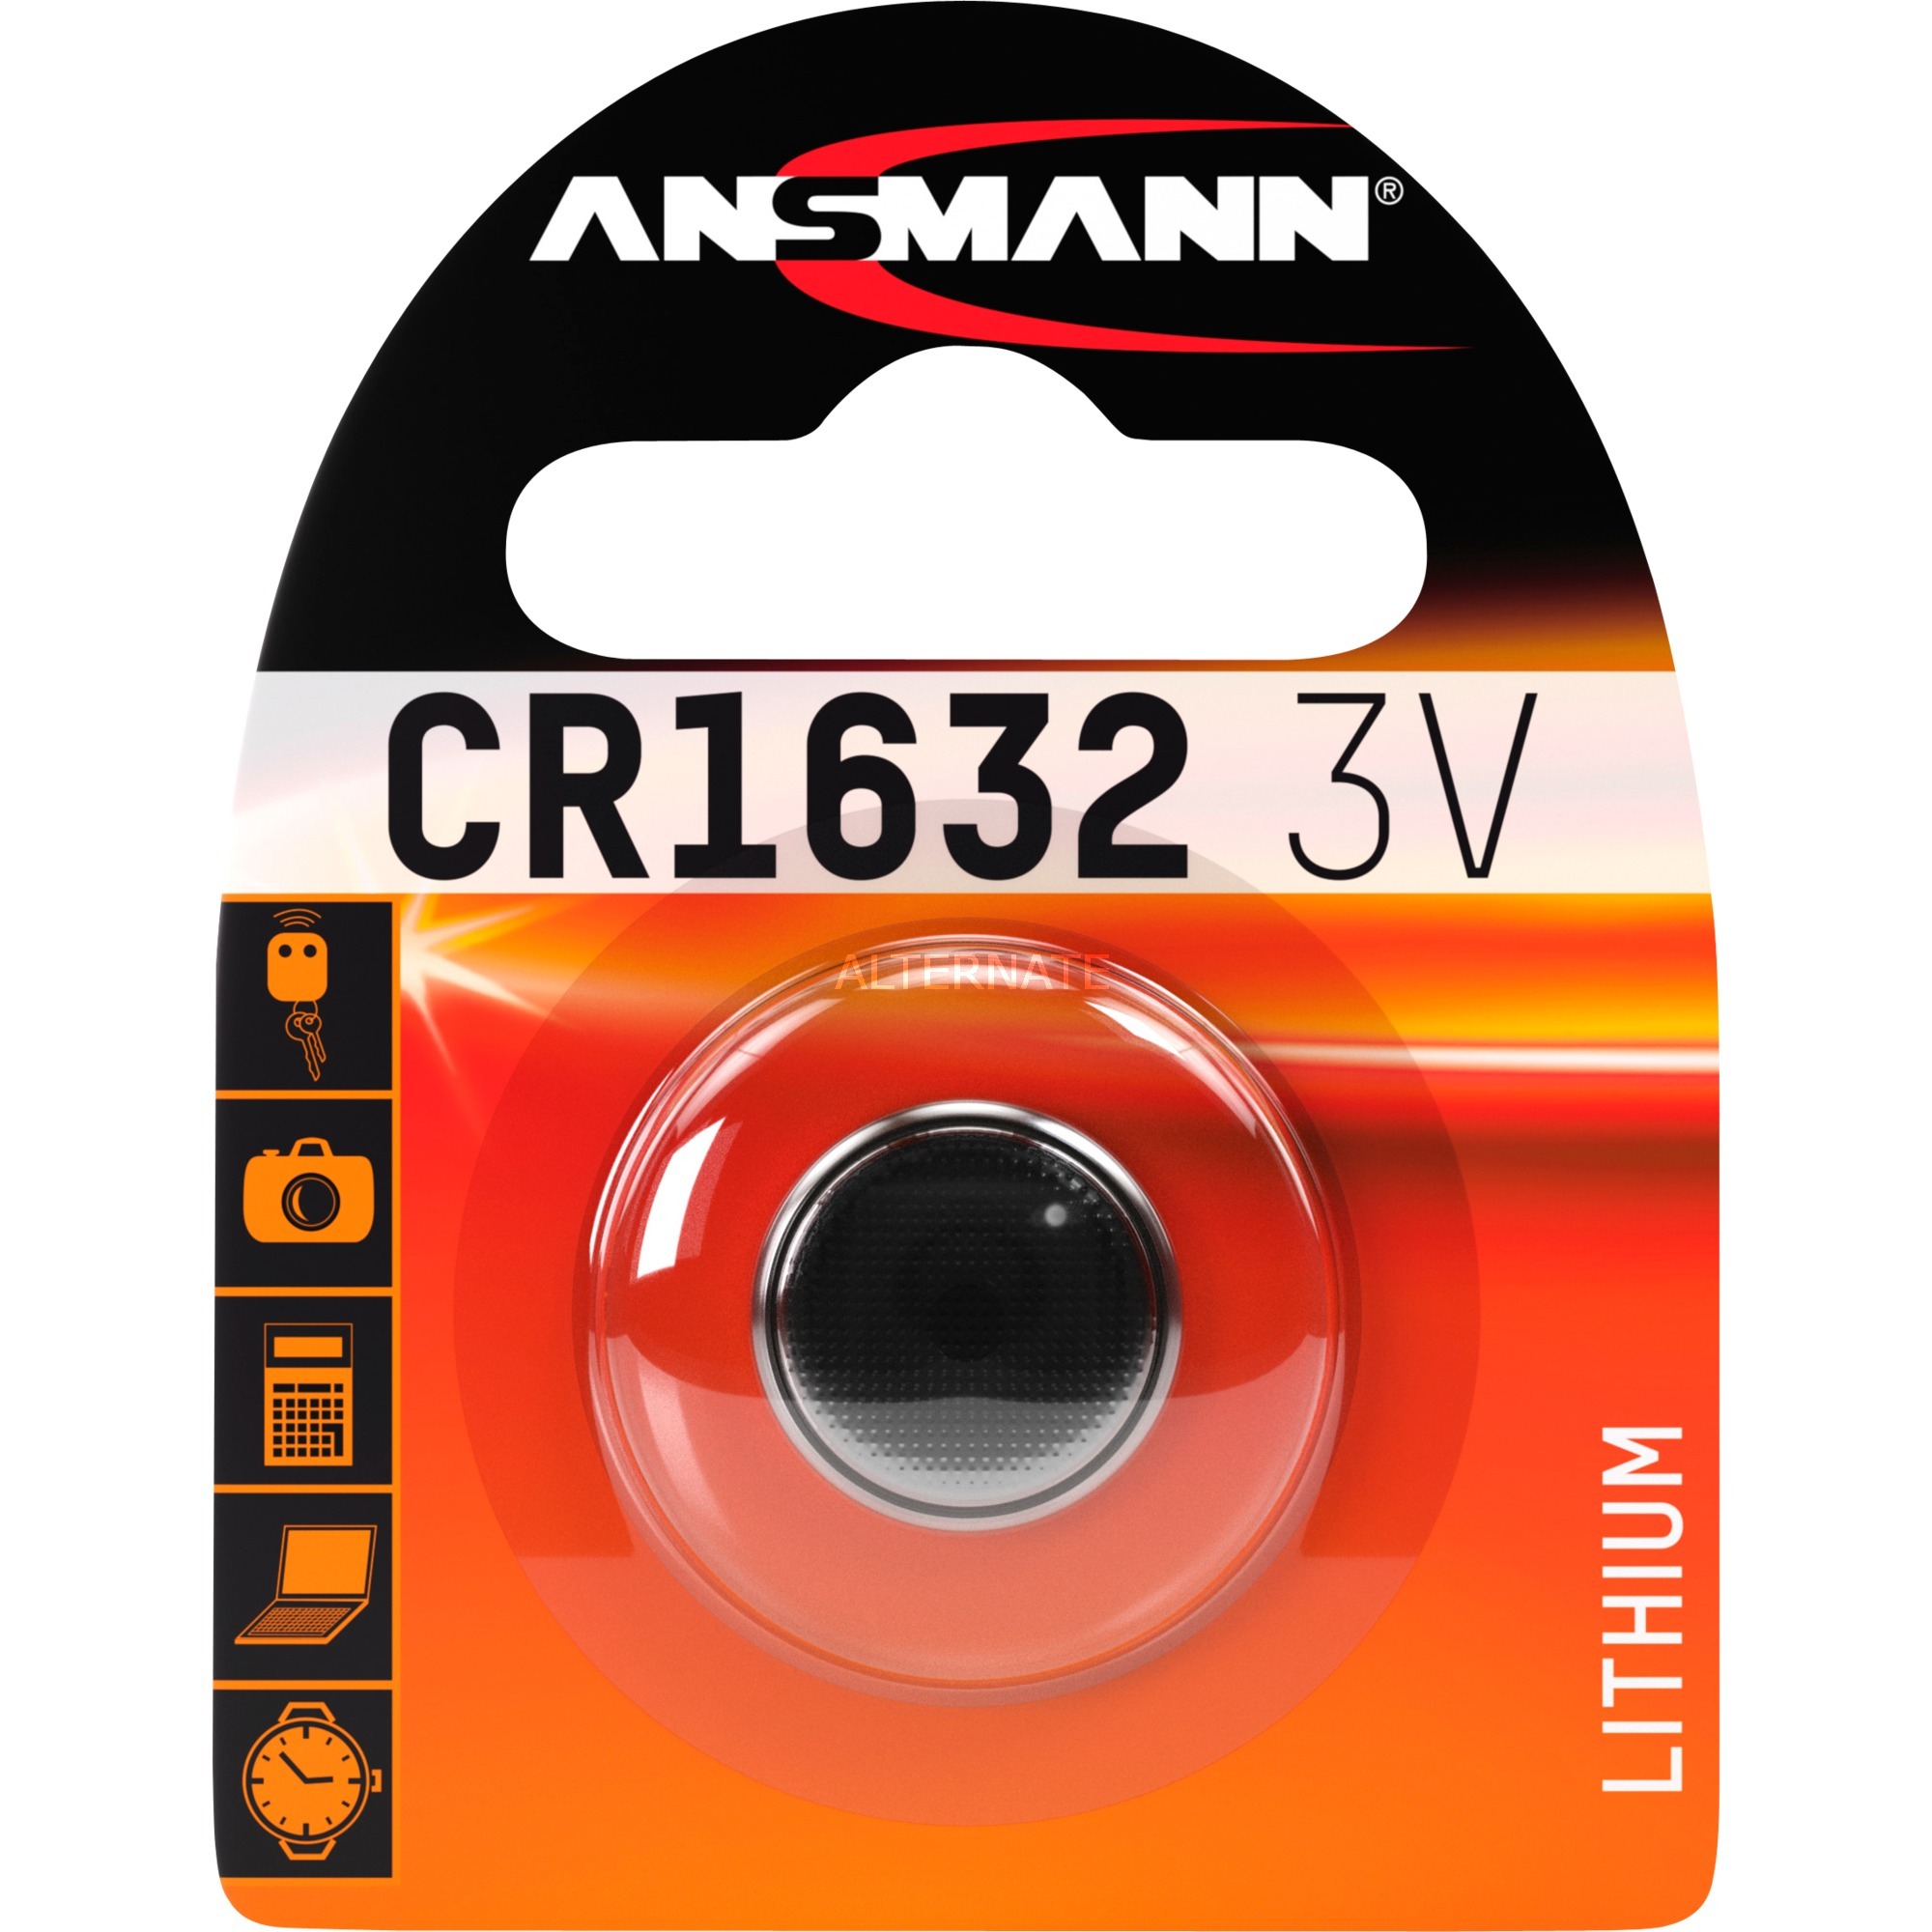 Image of Alternate - Lithium Knopfzelle CR1632, Batterie online einkaufen bei Alternate